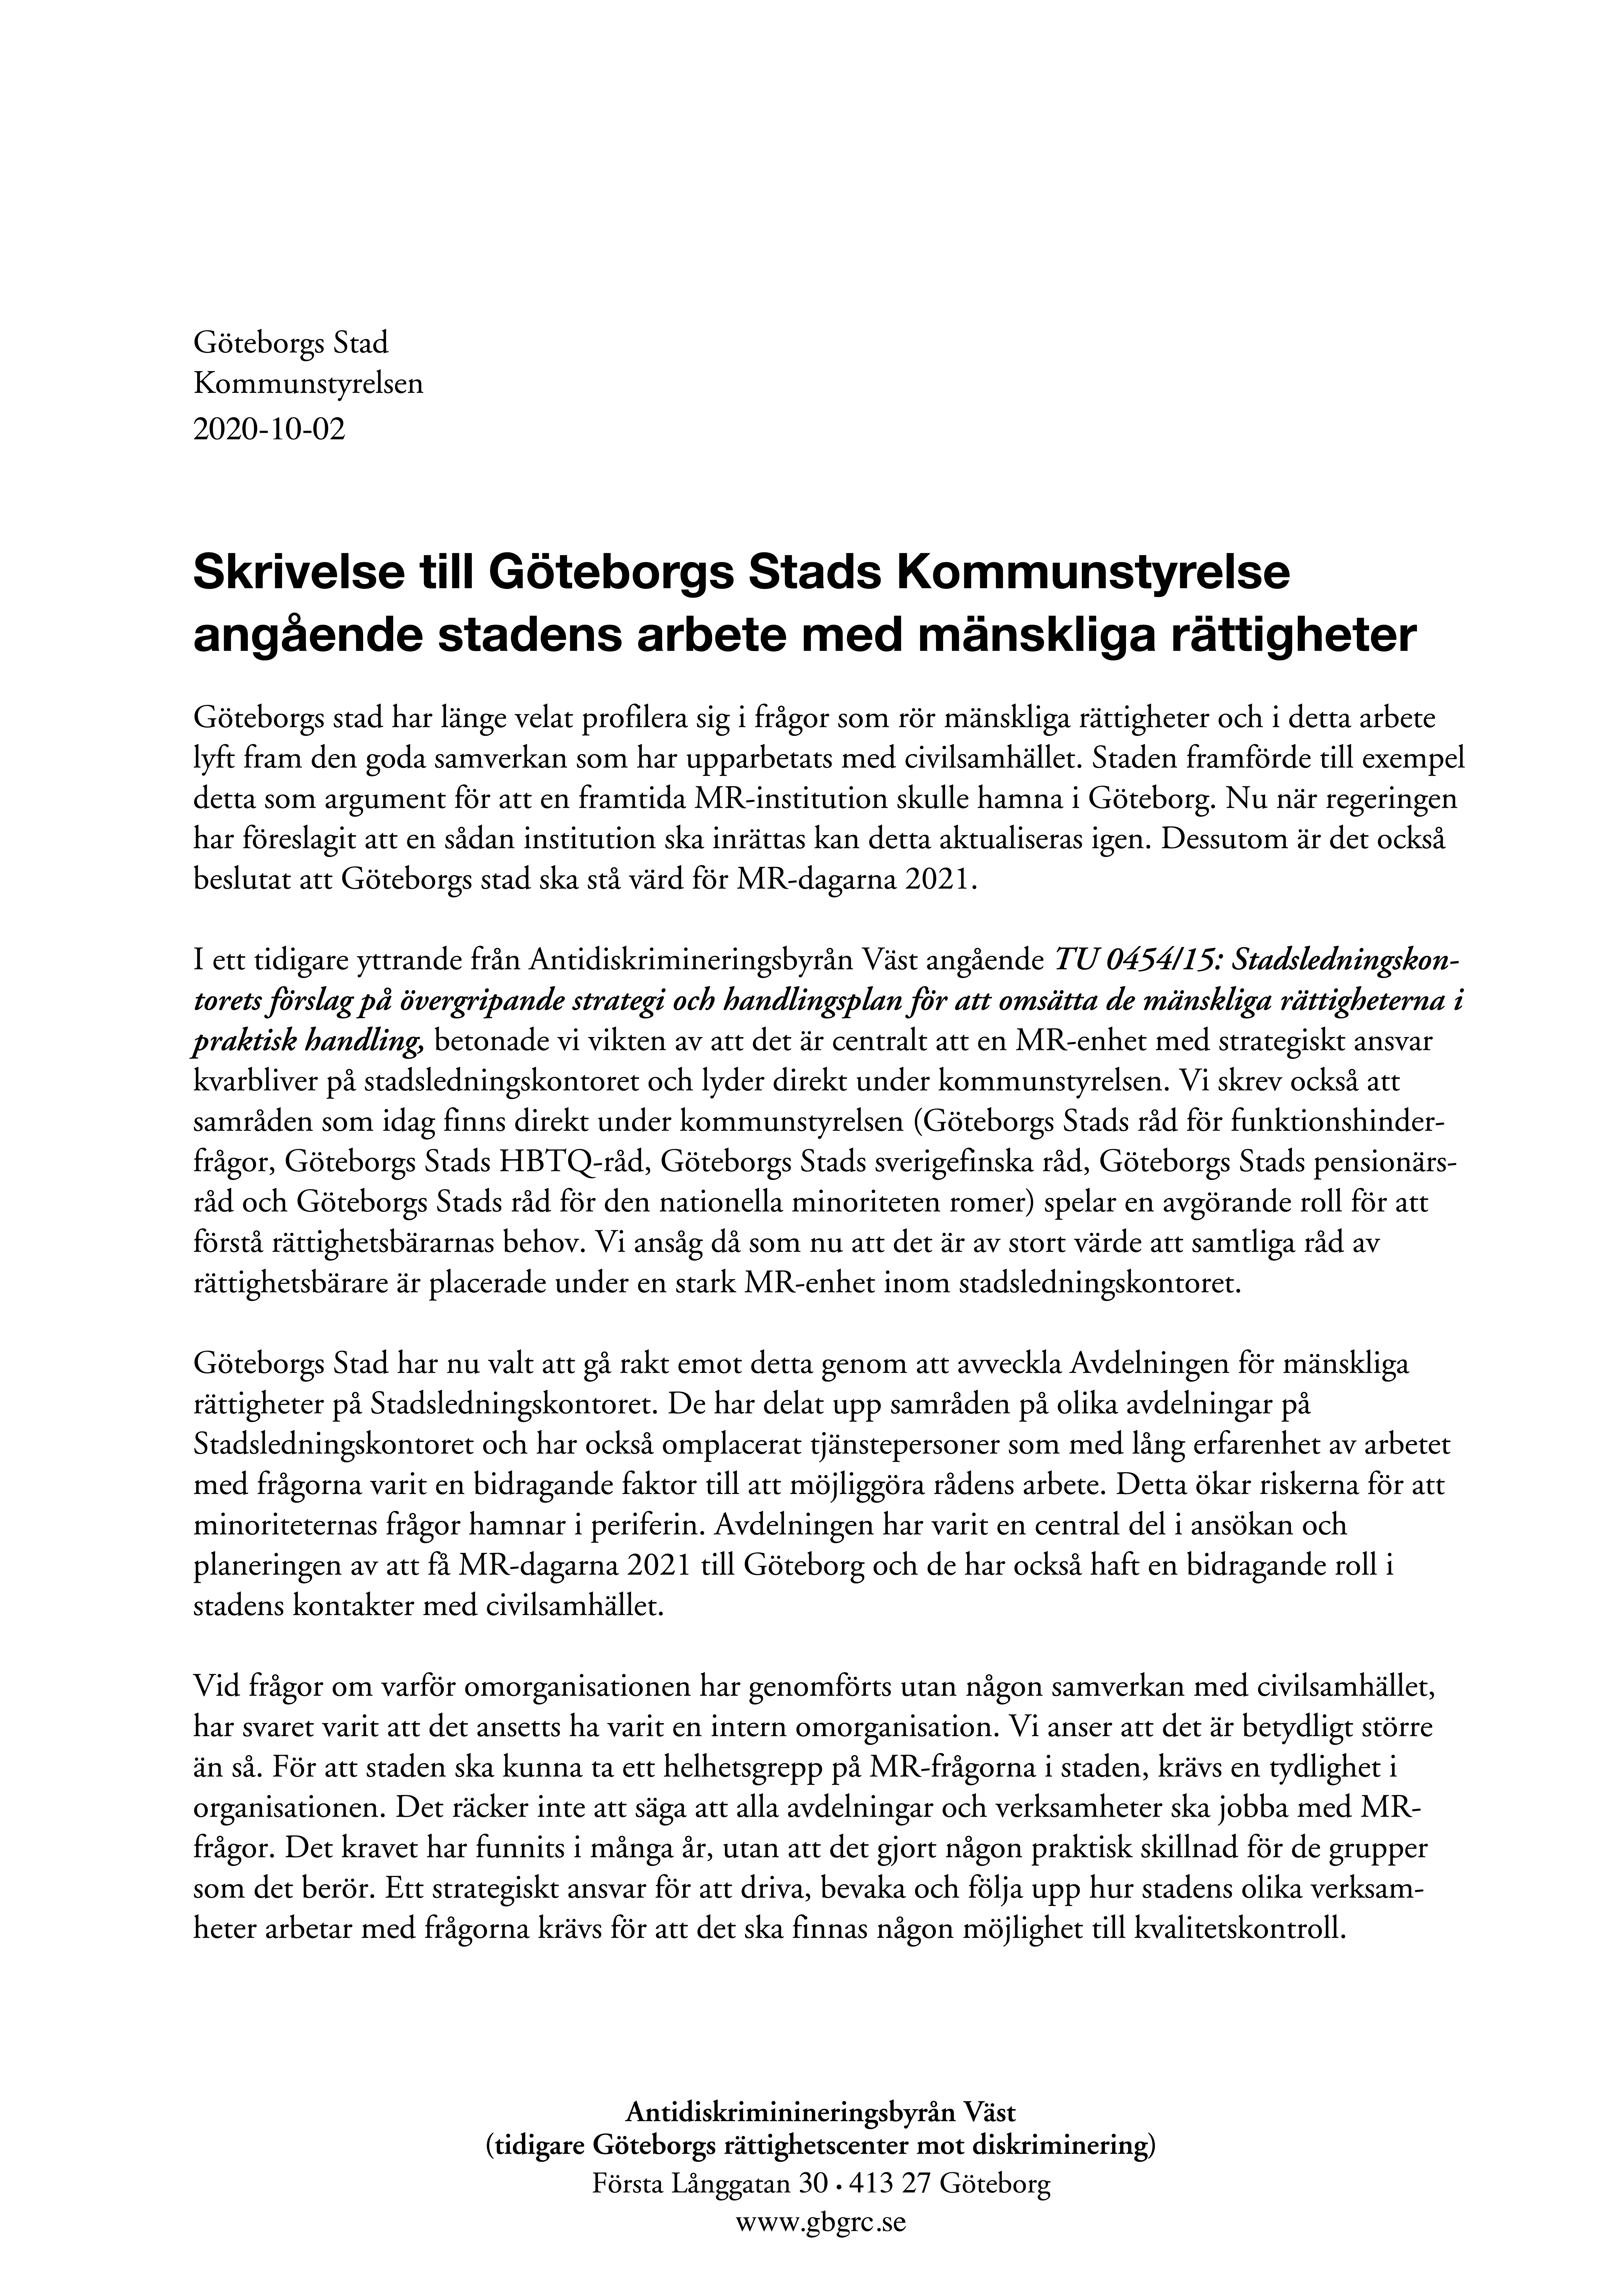 Antidiskrimineringsbyrån Väst (tidigare Göteborgs rättighetscenter mot diskriminering)_Skrivelse till Kommunstyrelsen